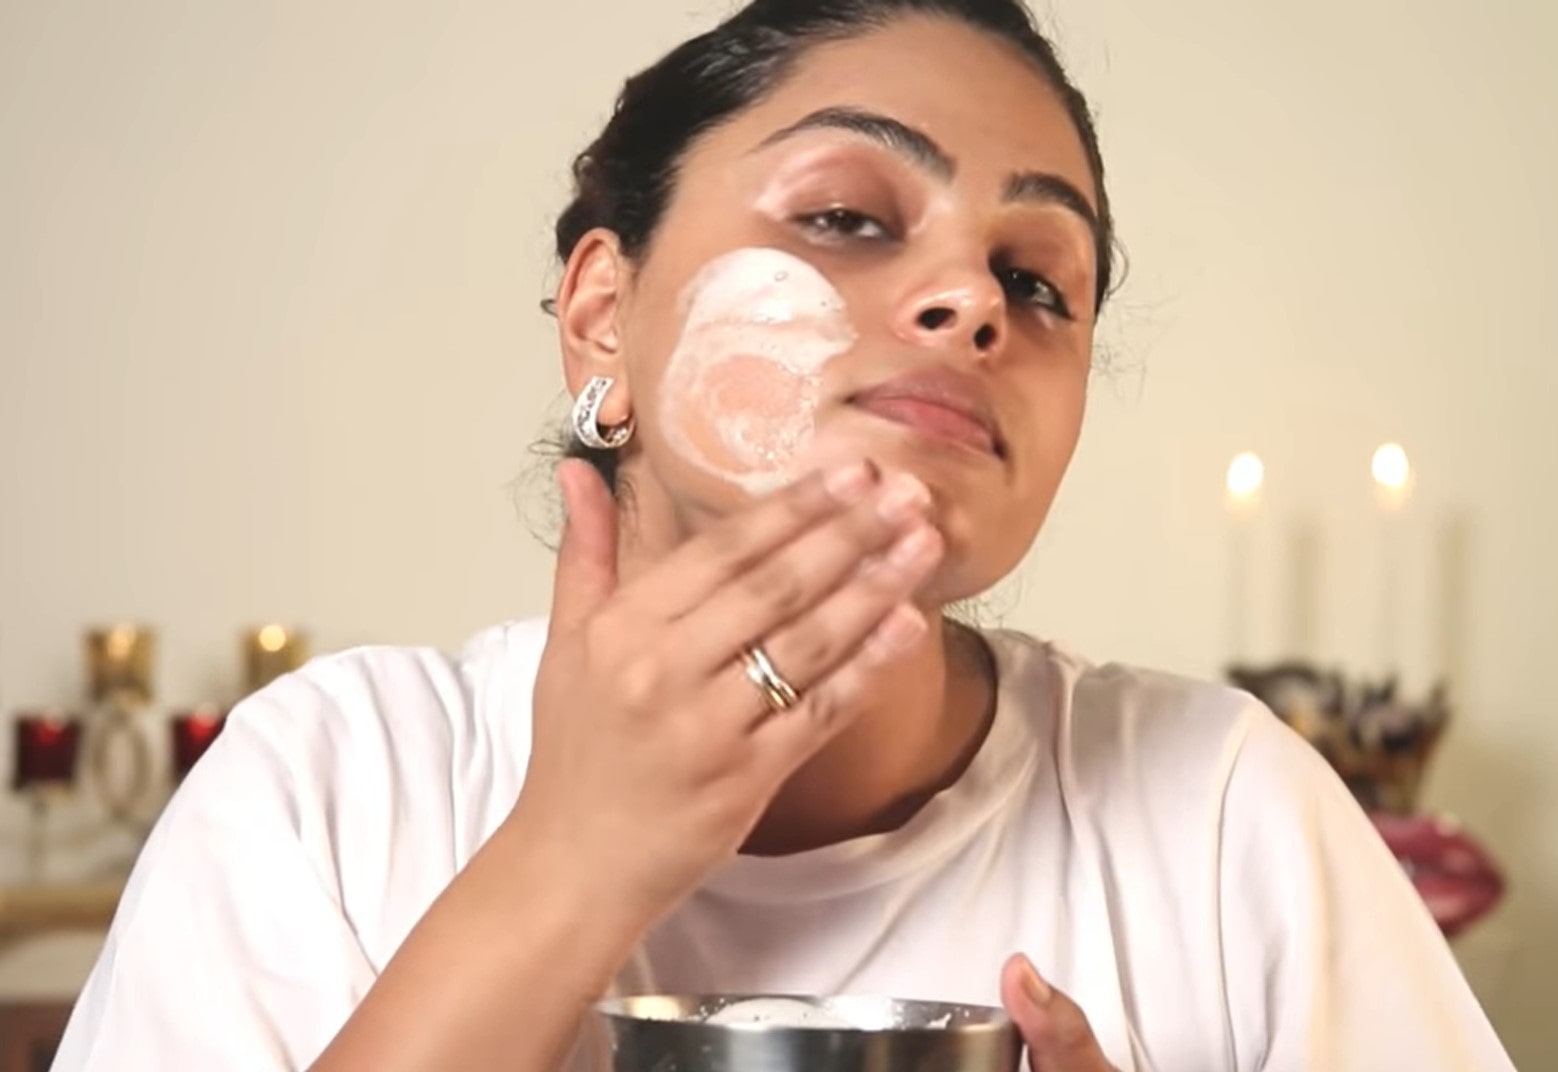 egg white DIY face masks